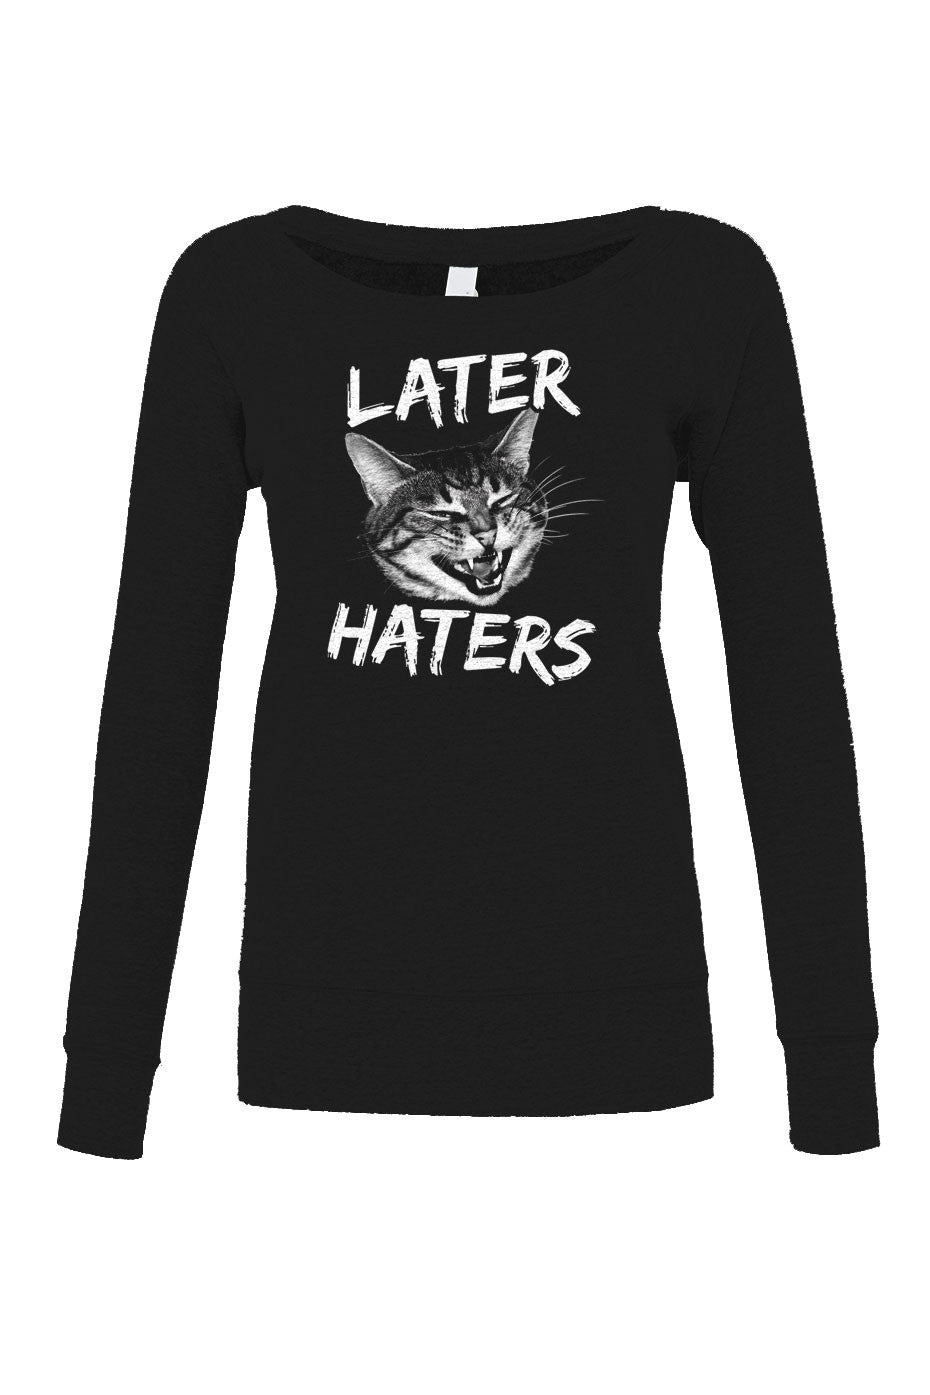 Women's Later Haters Scoop Neck Fleece Funny Cat Shirt